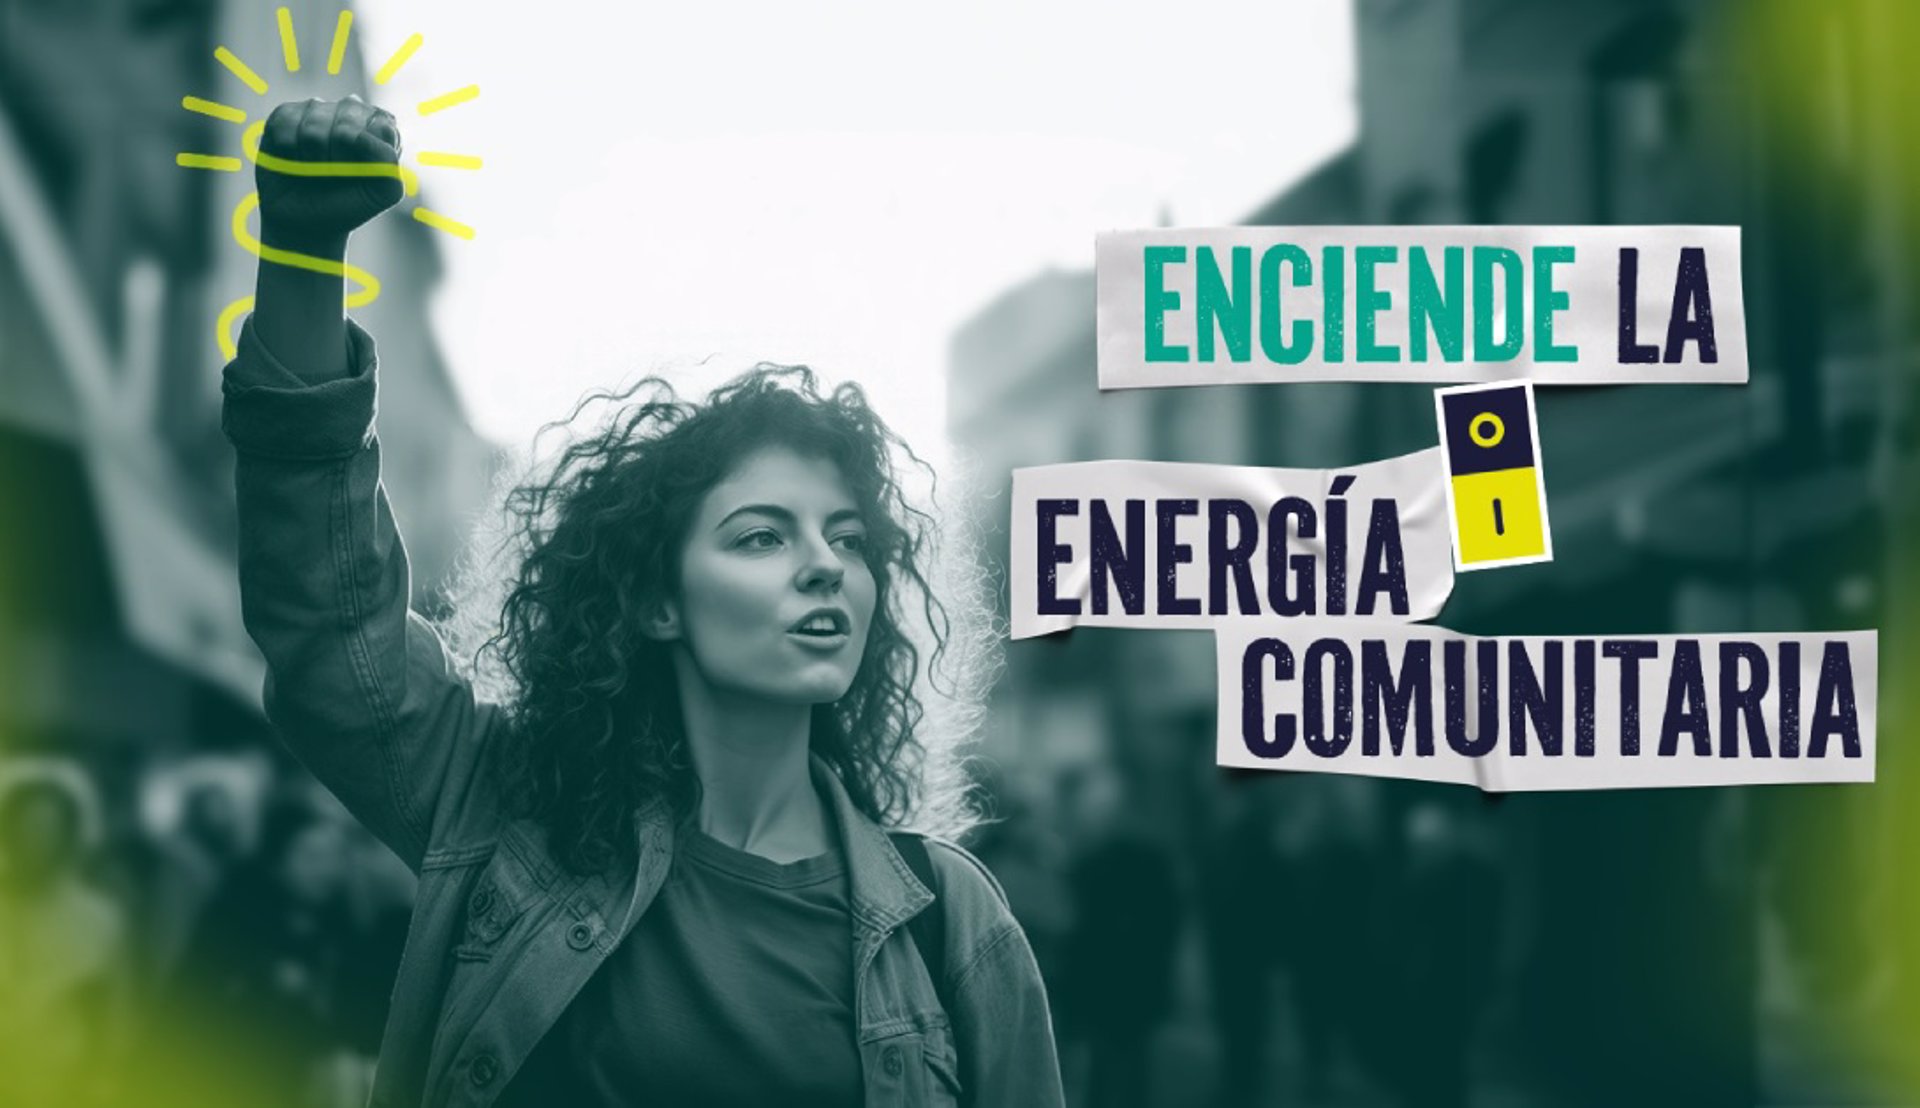 Más de 30 organizaciones piden al Gobierno más financiación y eliminar burocracia para fomentar comunidades energéticas. FOTO: COALICIÓN POR LA ENERGÍA COMUNITARIA